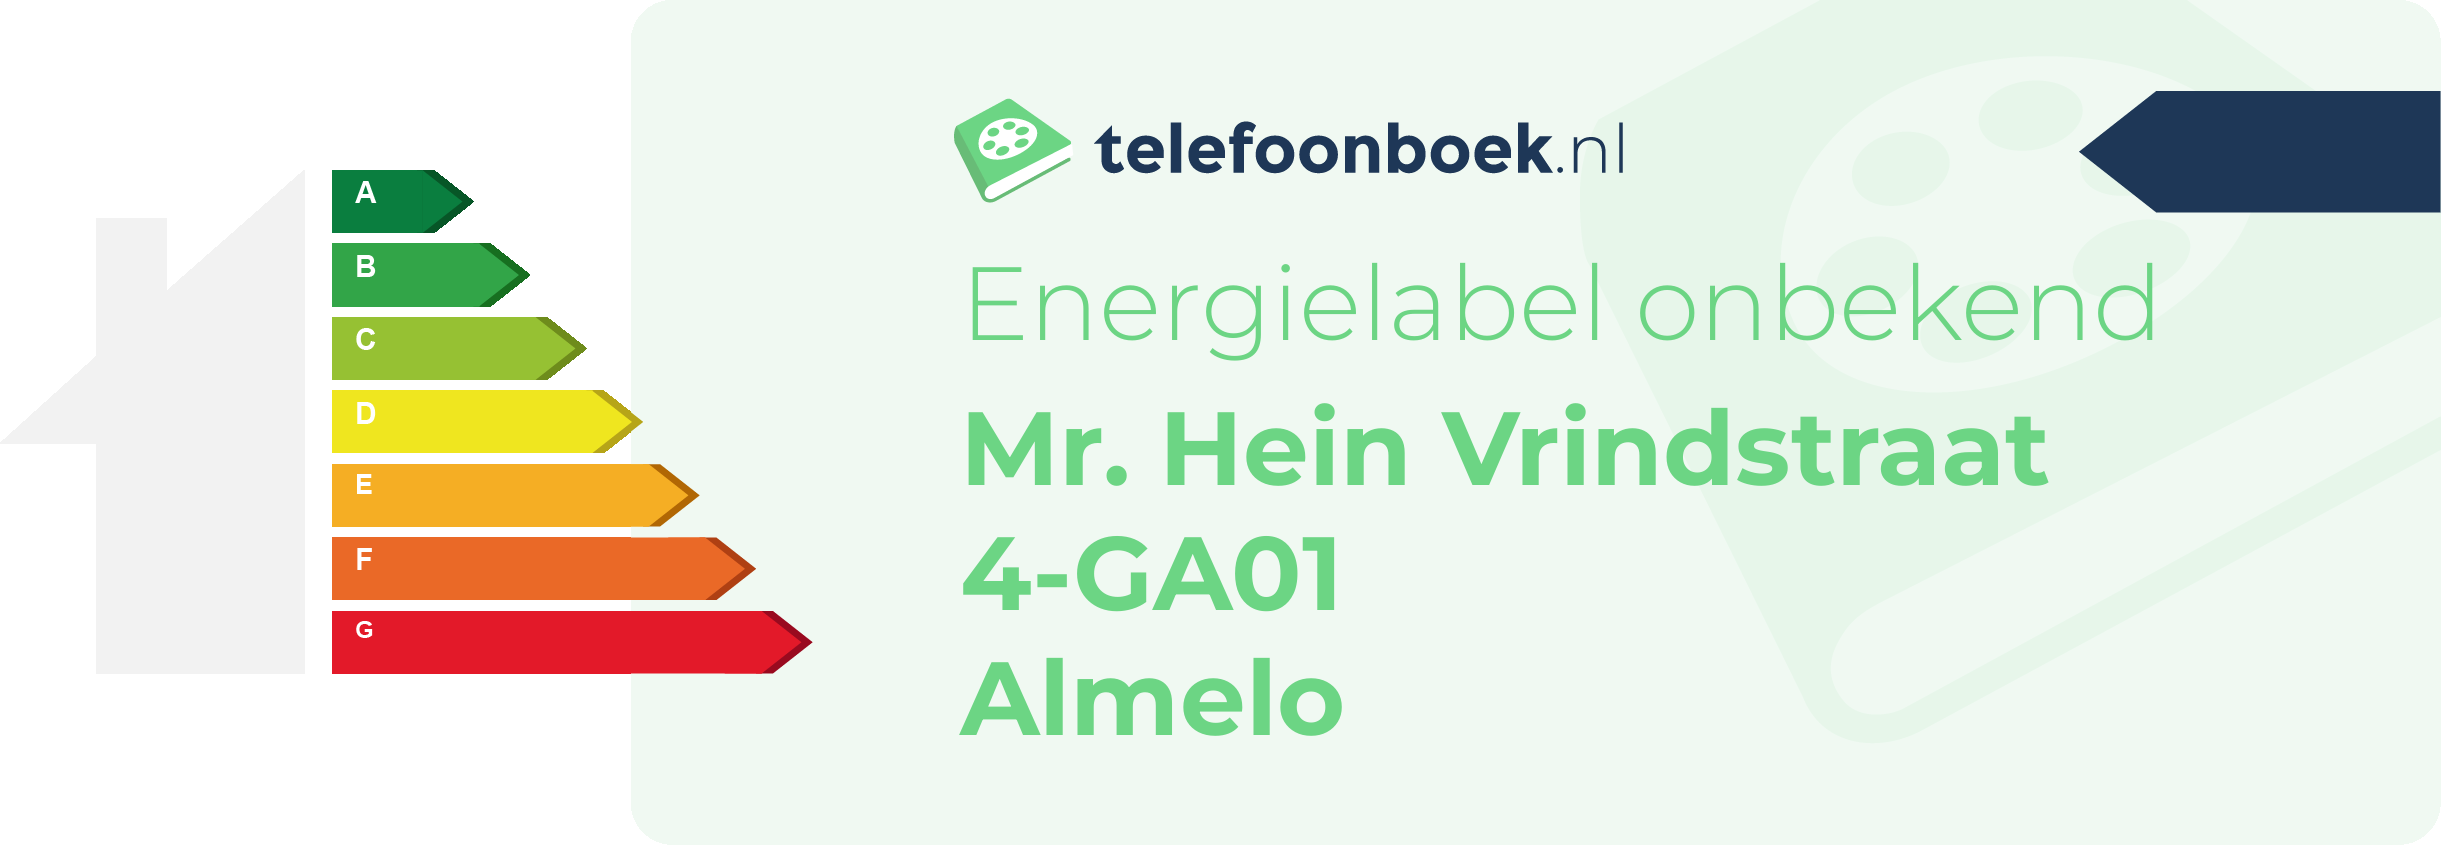 Energielabel Mr. Hein Vrindstraat 4-GA01 Almelo